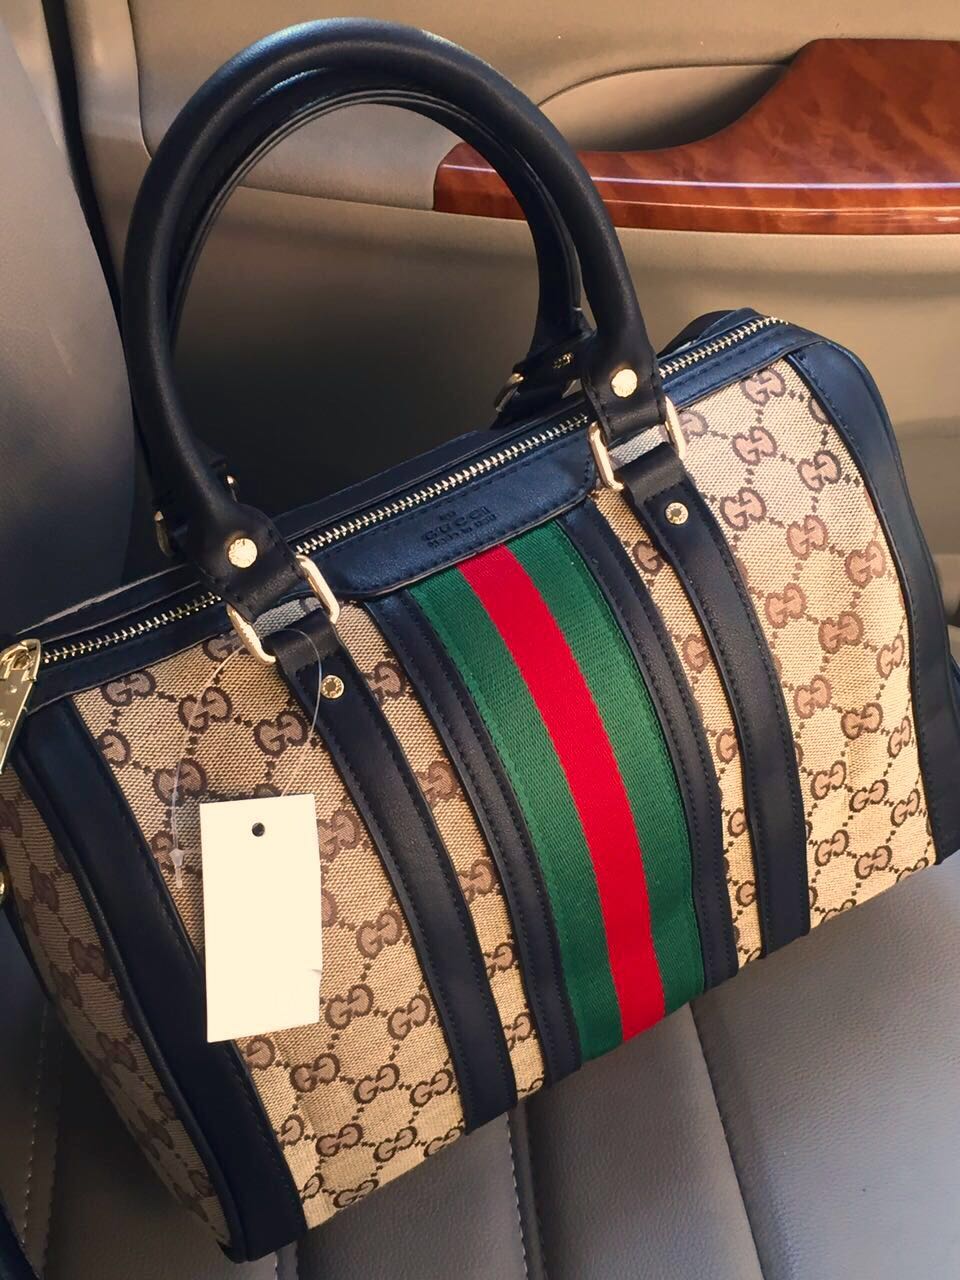 indendørs Stratford på Avon jeg er sulten Gucci Ladies Handbags At Lowest Price - Shop Now At Dilli Bazar